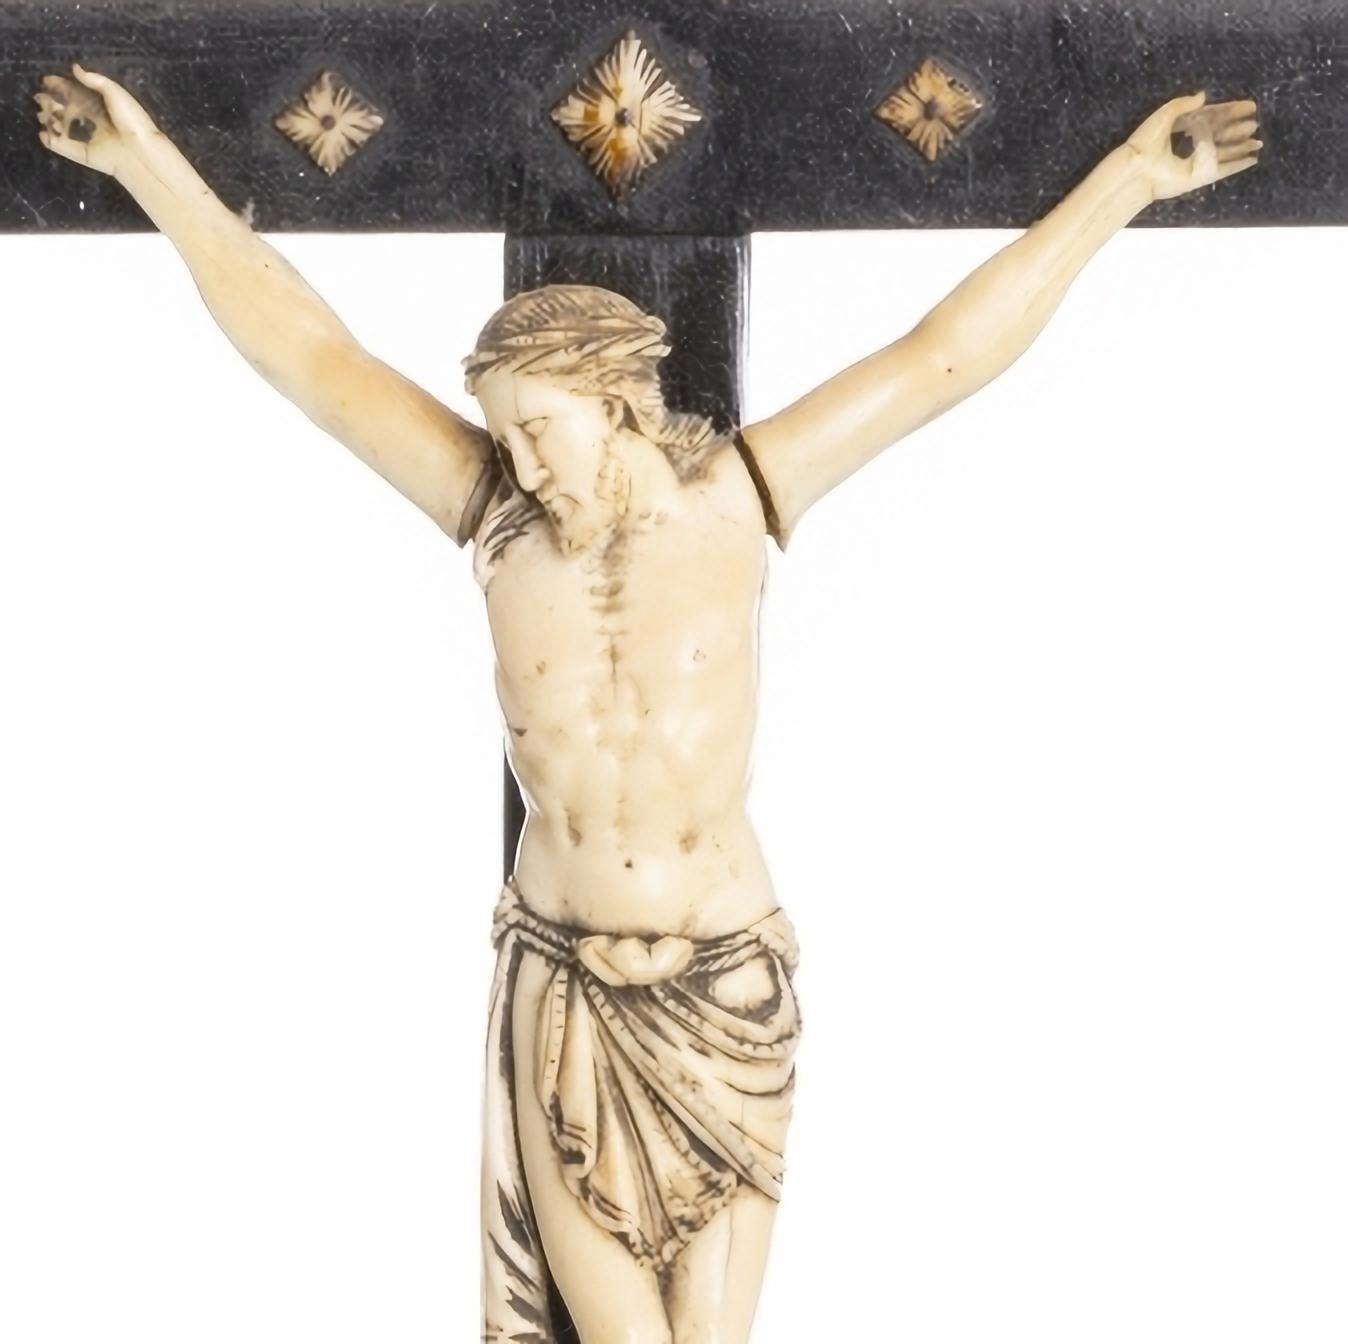 
JÉSUS CHRIST CRUCIFIÉ

Croix en bois exotique, sculpture portugaise du XIXe siècle
sculpté en ivoire...
Signes d'utilisation. Dim. Hauteur : (christ) 16 cm ; (total) 45 cm
bonnes conditions